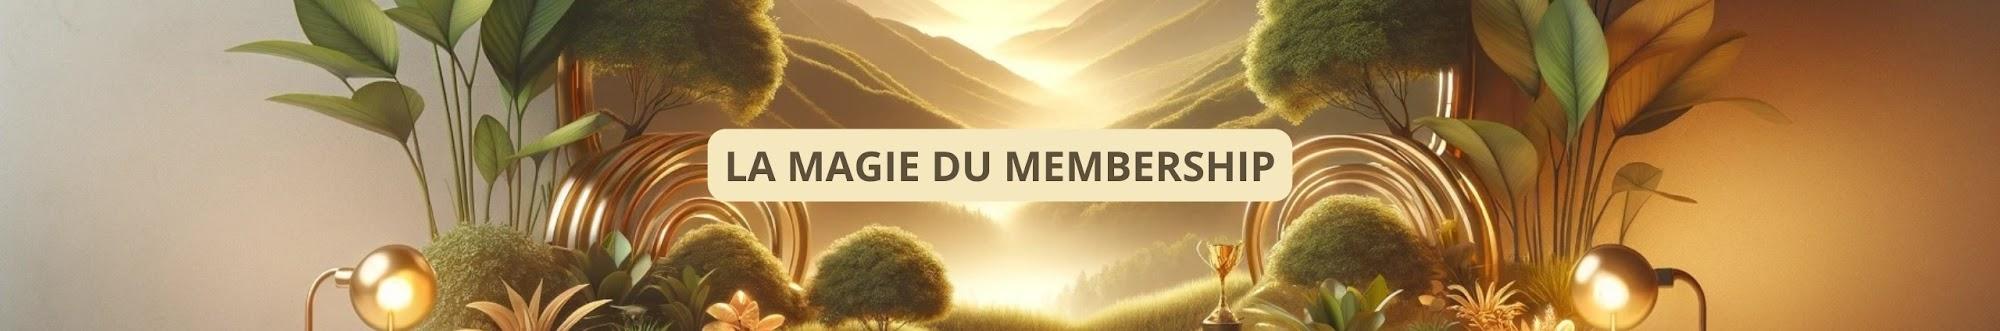 Vincent OG - Le Magicien du Membership